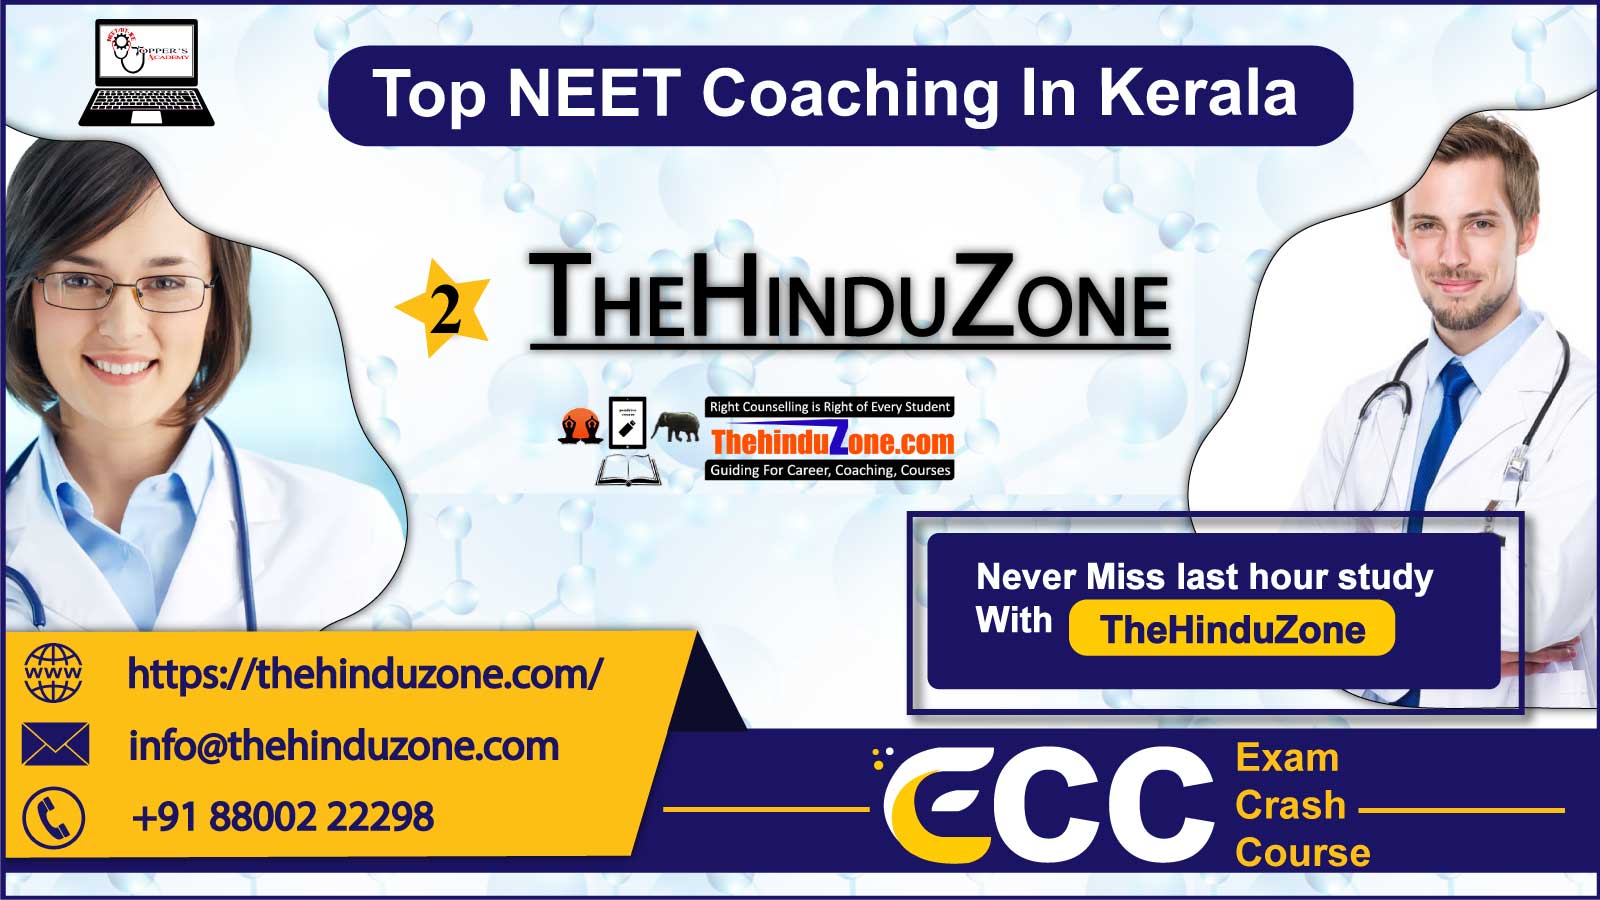 TheHinduZone NEET Coaching in Kerala